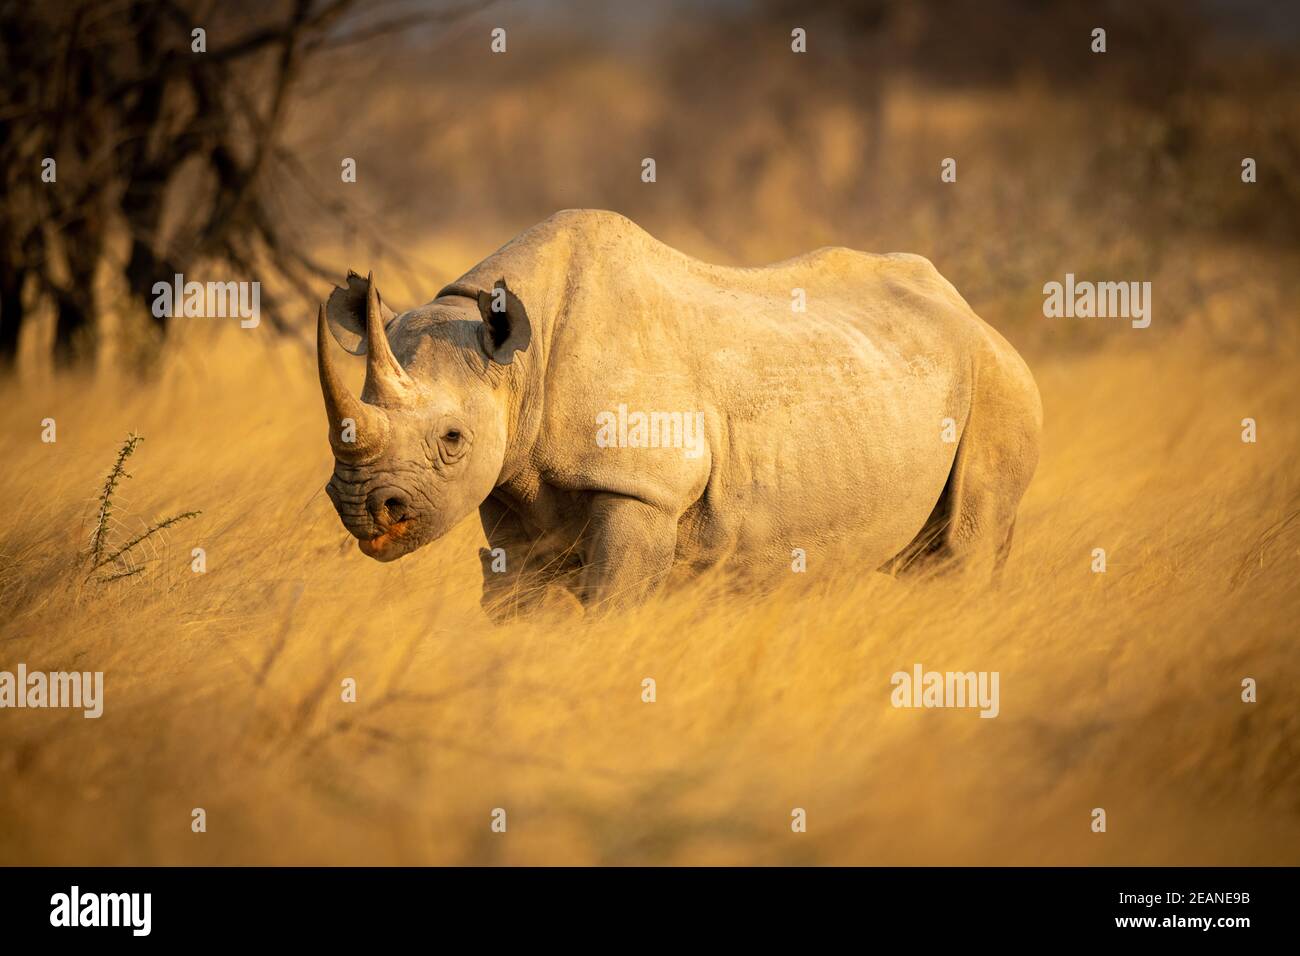 Il rinoceronte nero si trova in una telecamera a vista in erba Foto Stock